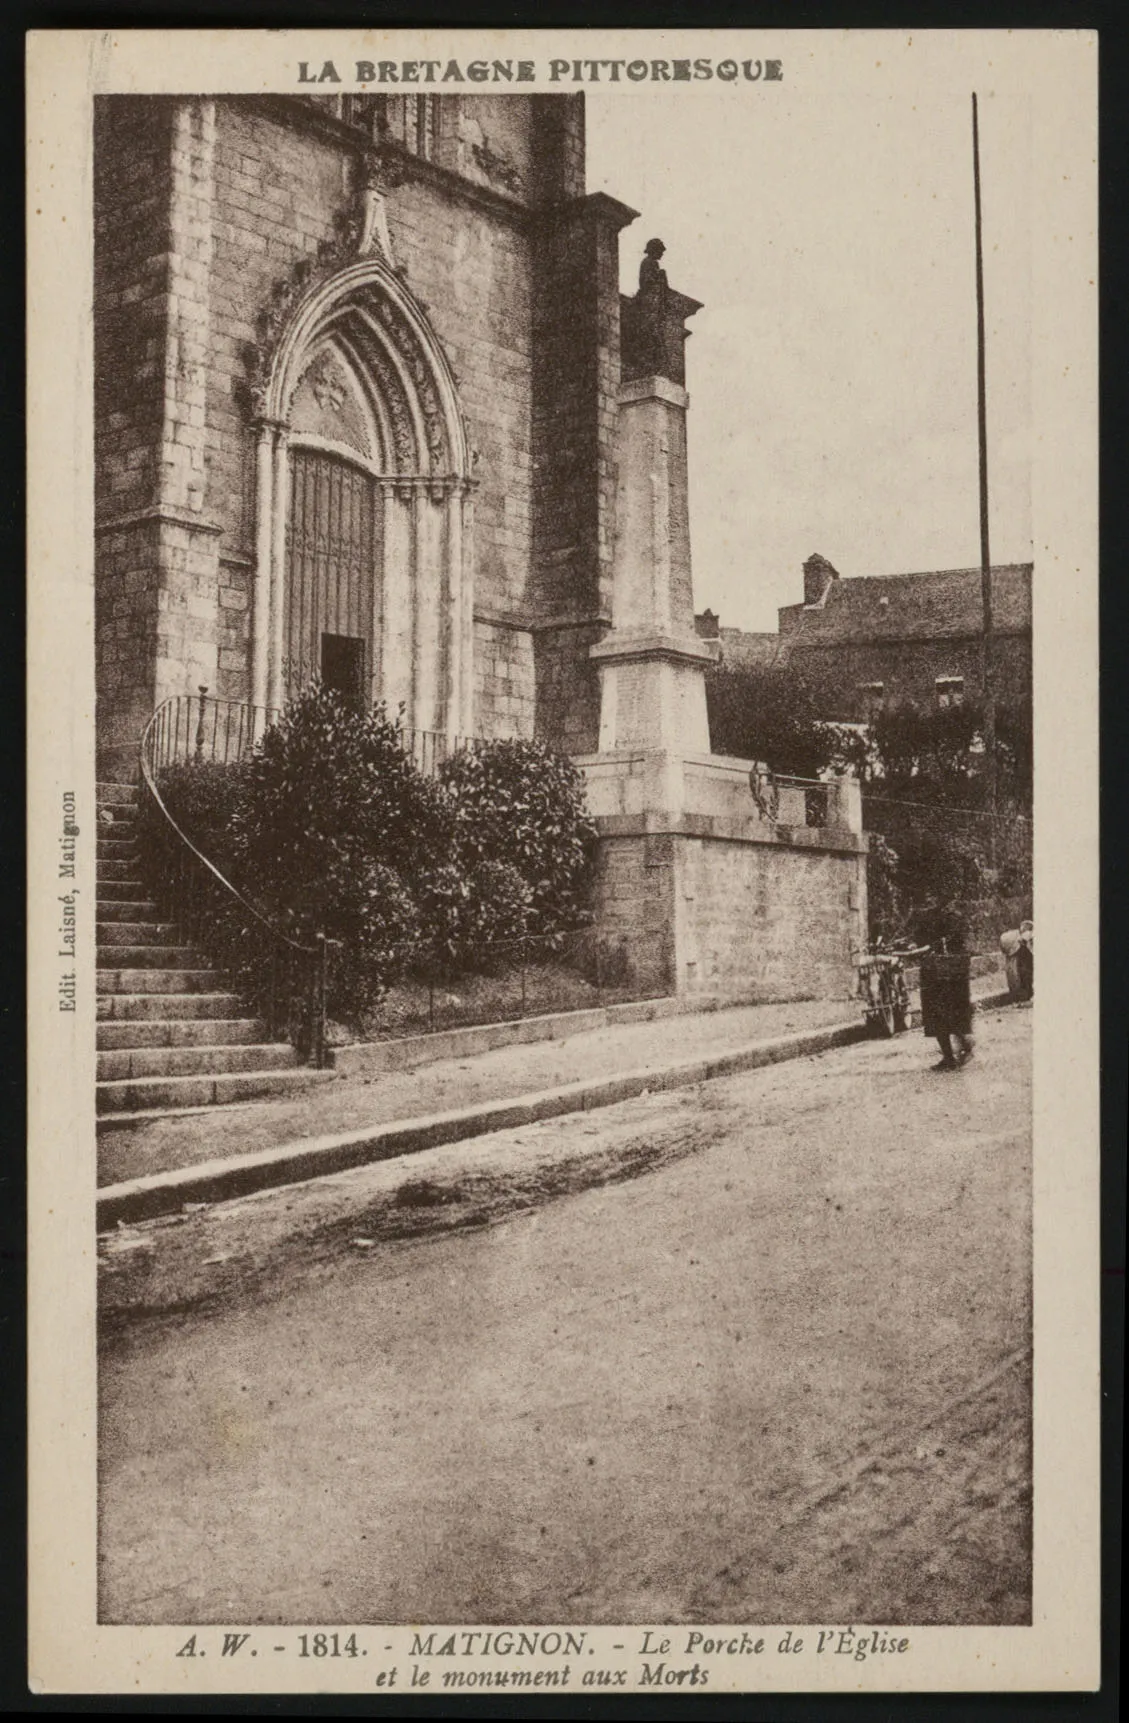 Photo showing: Le Porche de l'Eglise et le Monument aux Morts.